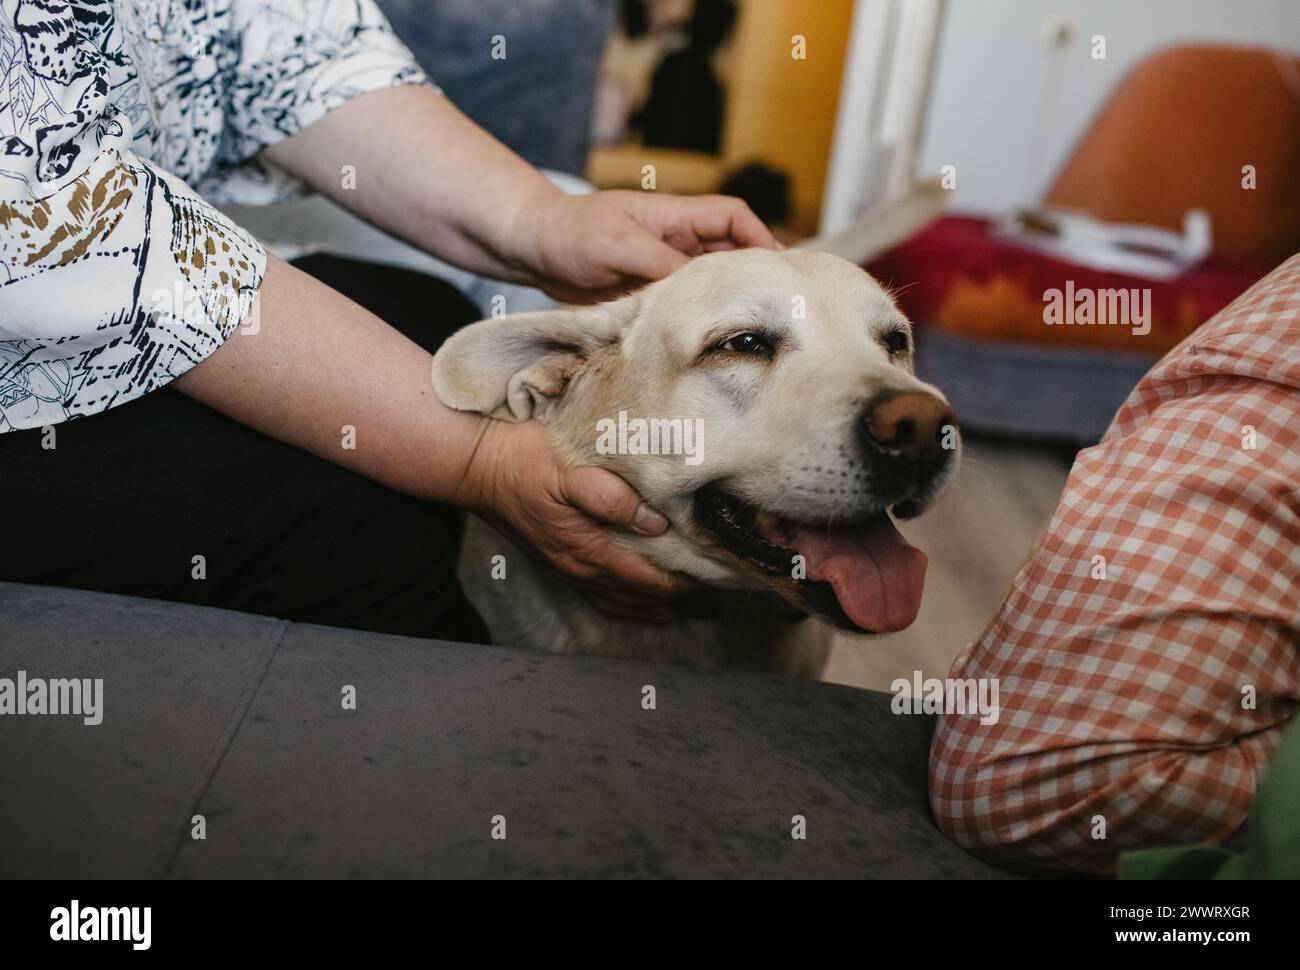 Una persona sta accarezzando delicatamente un cane che si trova sotto un altro cane, ricevendo affetto sulla sua testa. Foto Stock